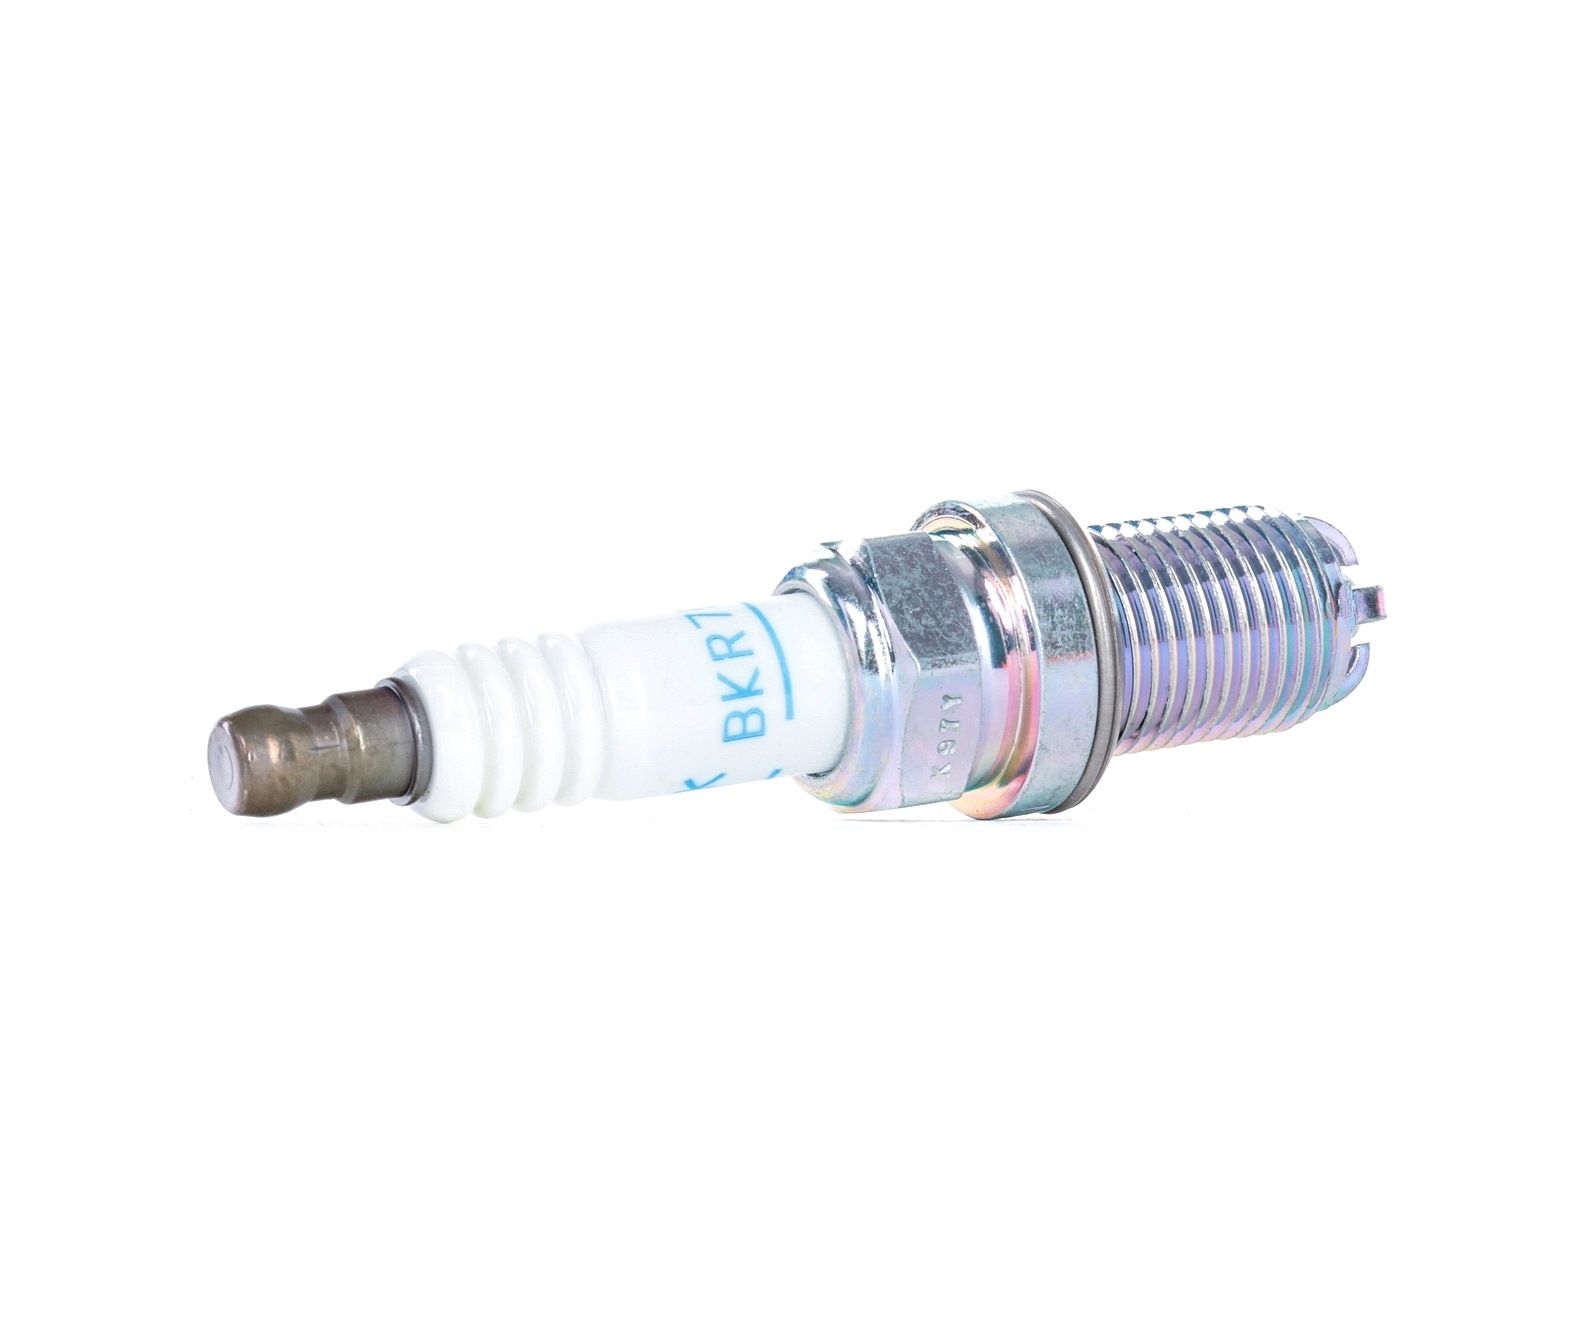 Buy Spark Plug NGK 4285 - PORSCHE Glow plug system parts online